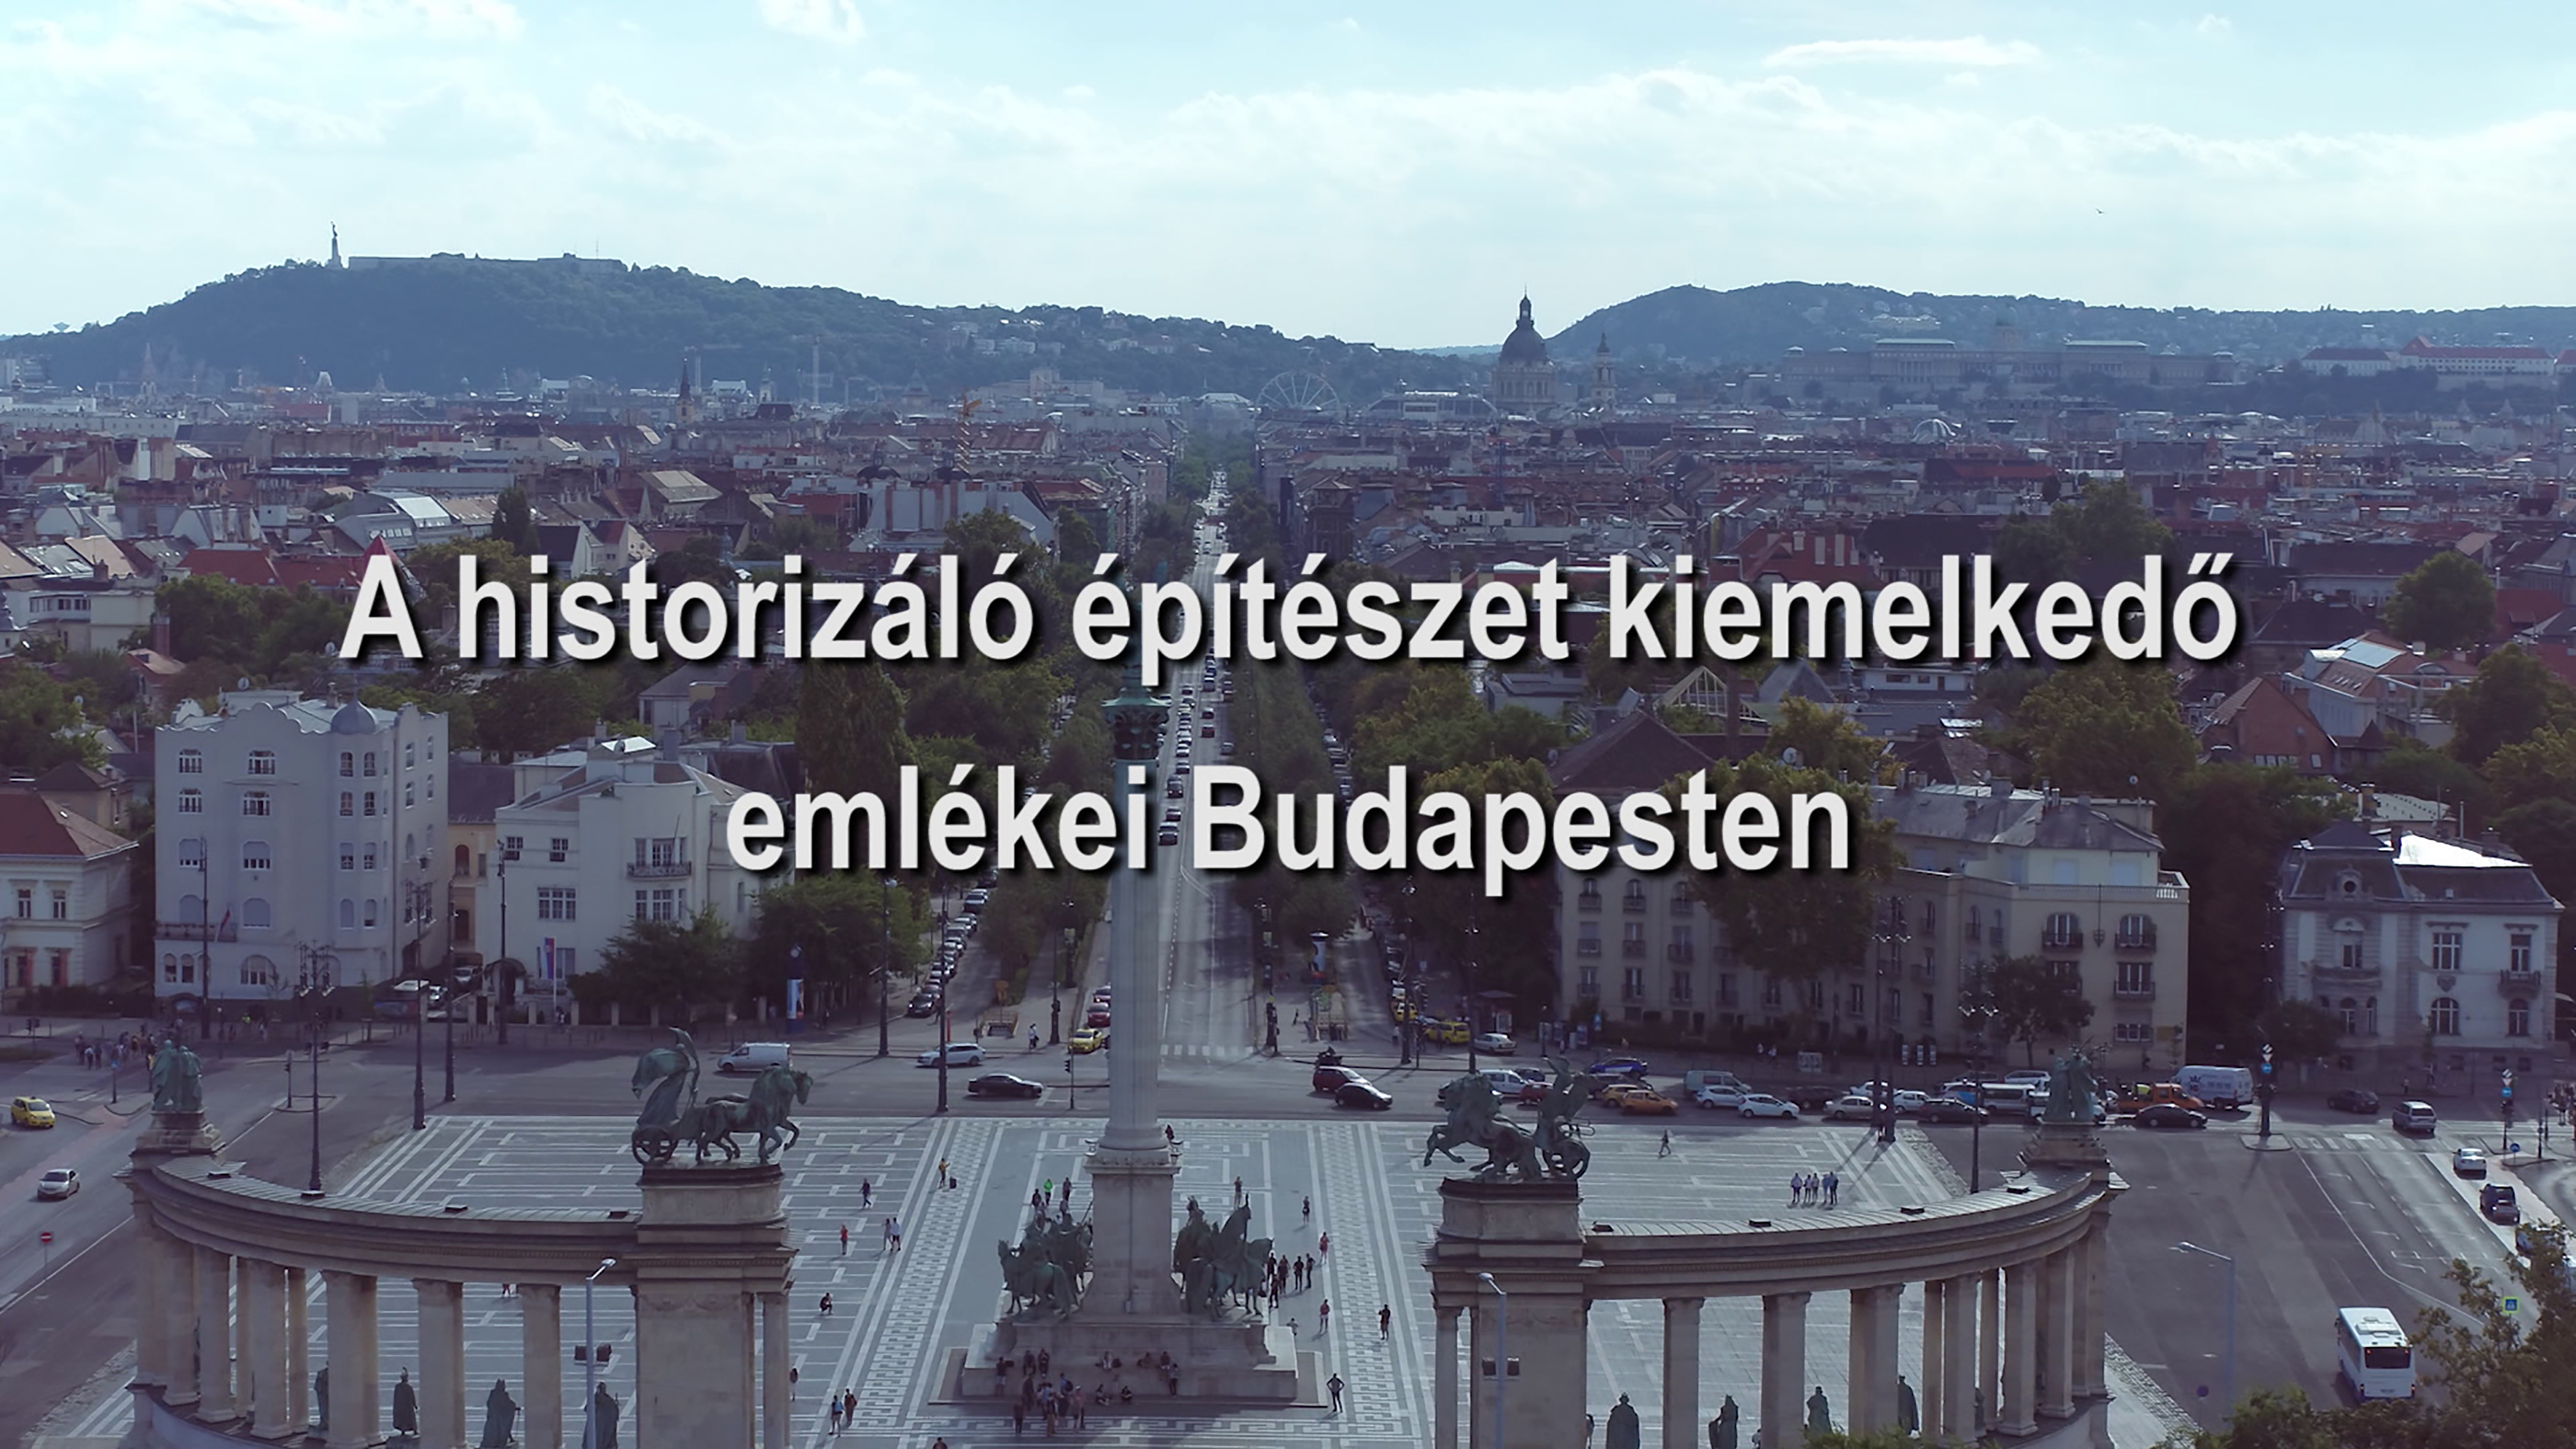 A &quot;historizáló építészet&quot; kiemelkedő emlékei Budapesten